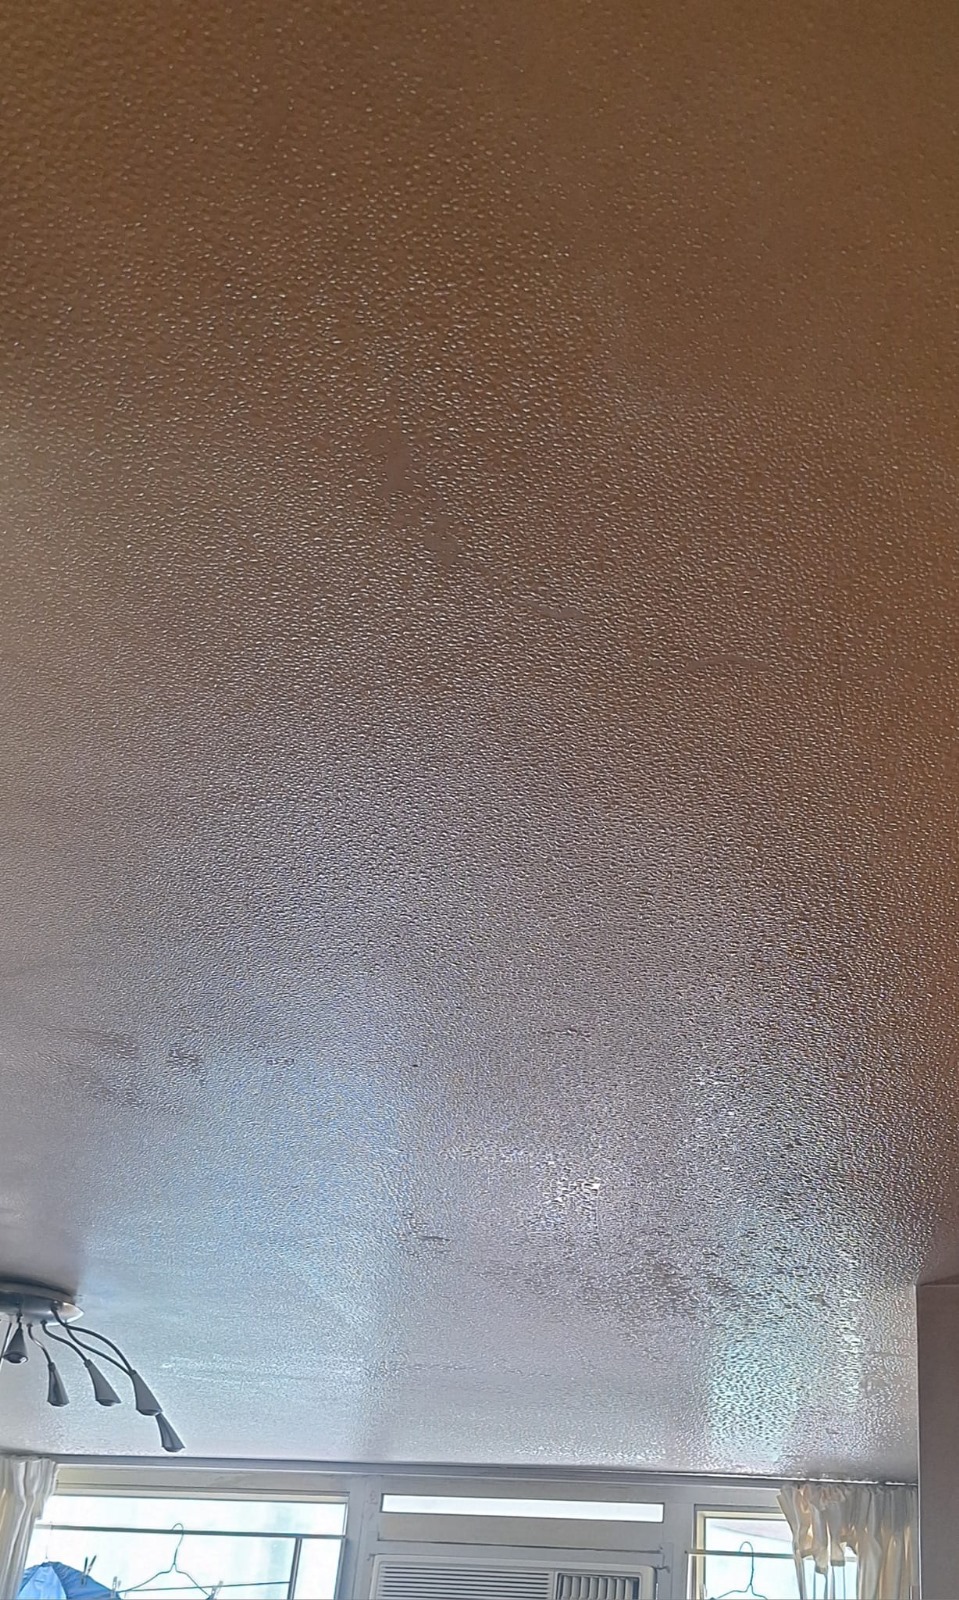 網民分享家中天花板上佈滿水珠。FB圖片